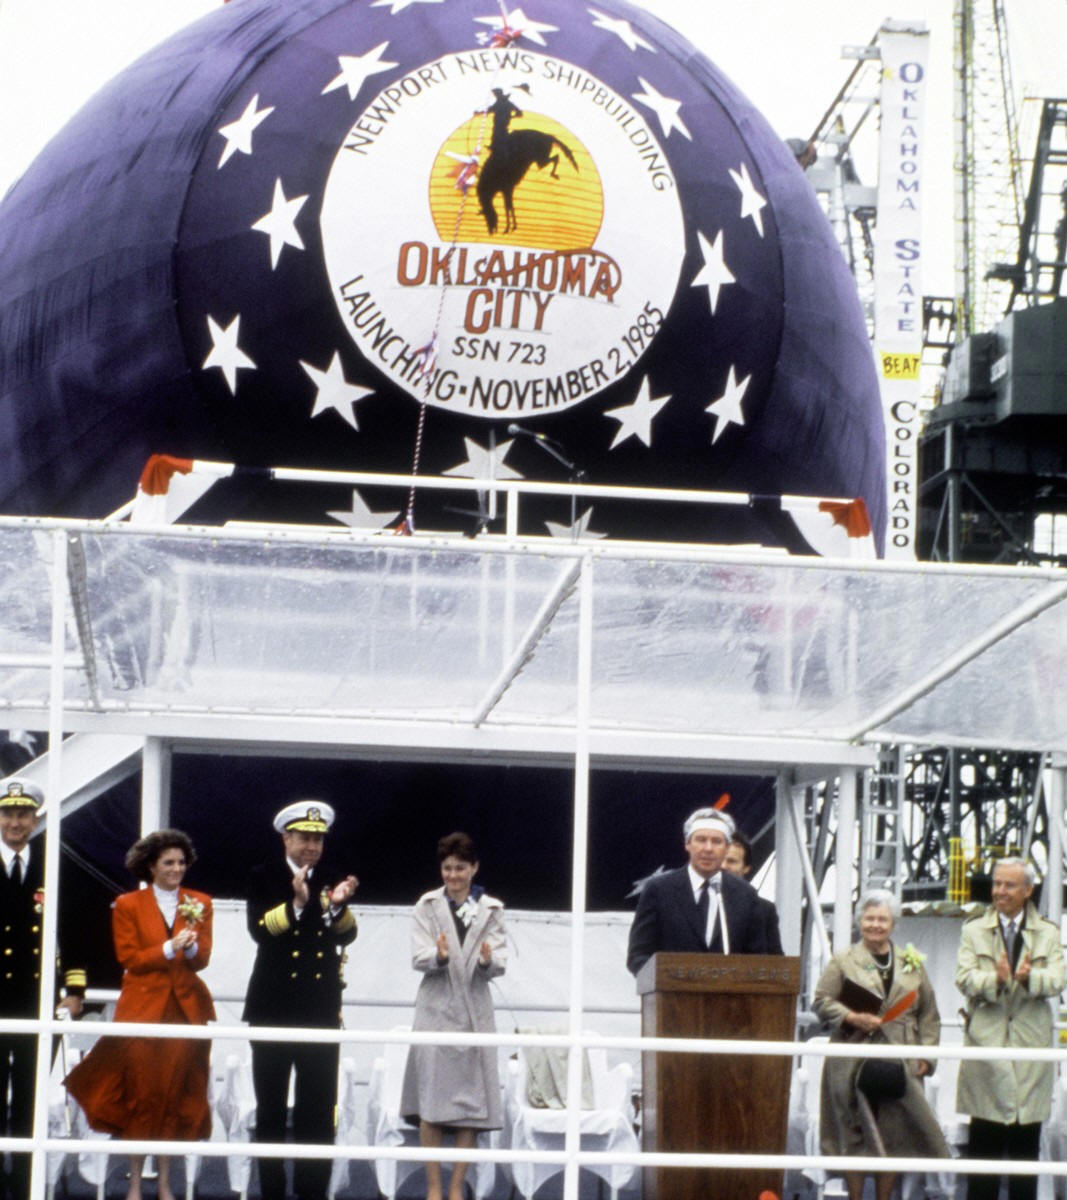 ssn-723 uss oklahoma city launching ceremony november 1985